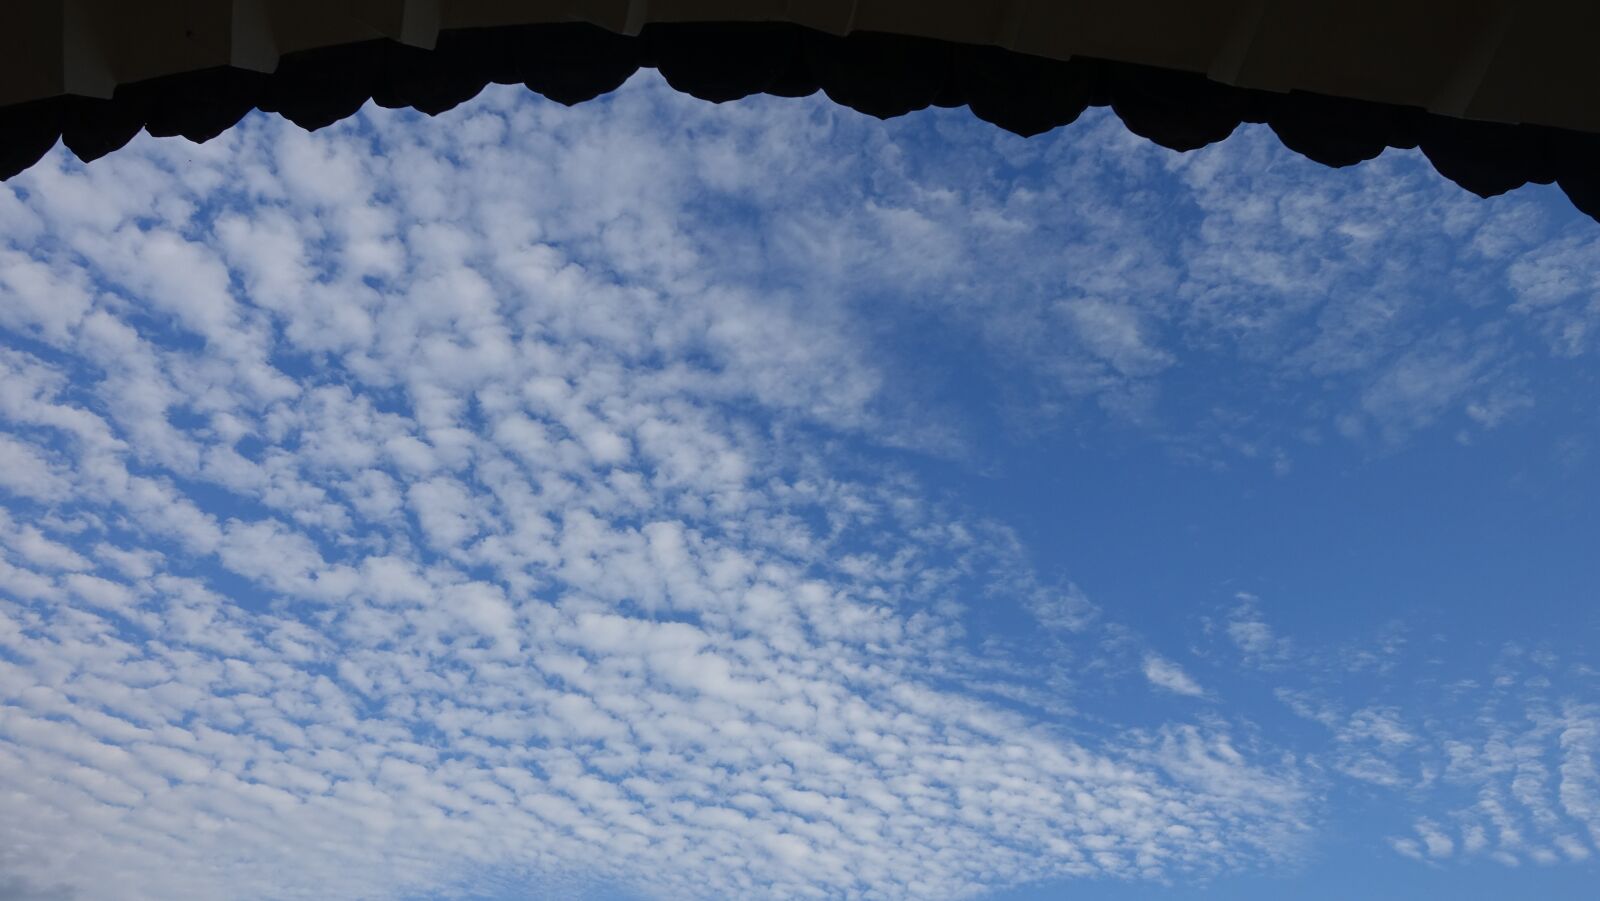 Sony Cyber-shot DSC-RX100 IV sample photo. Sky, cloud, landscape photography